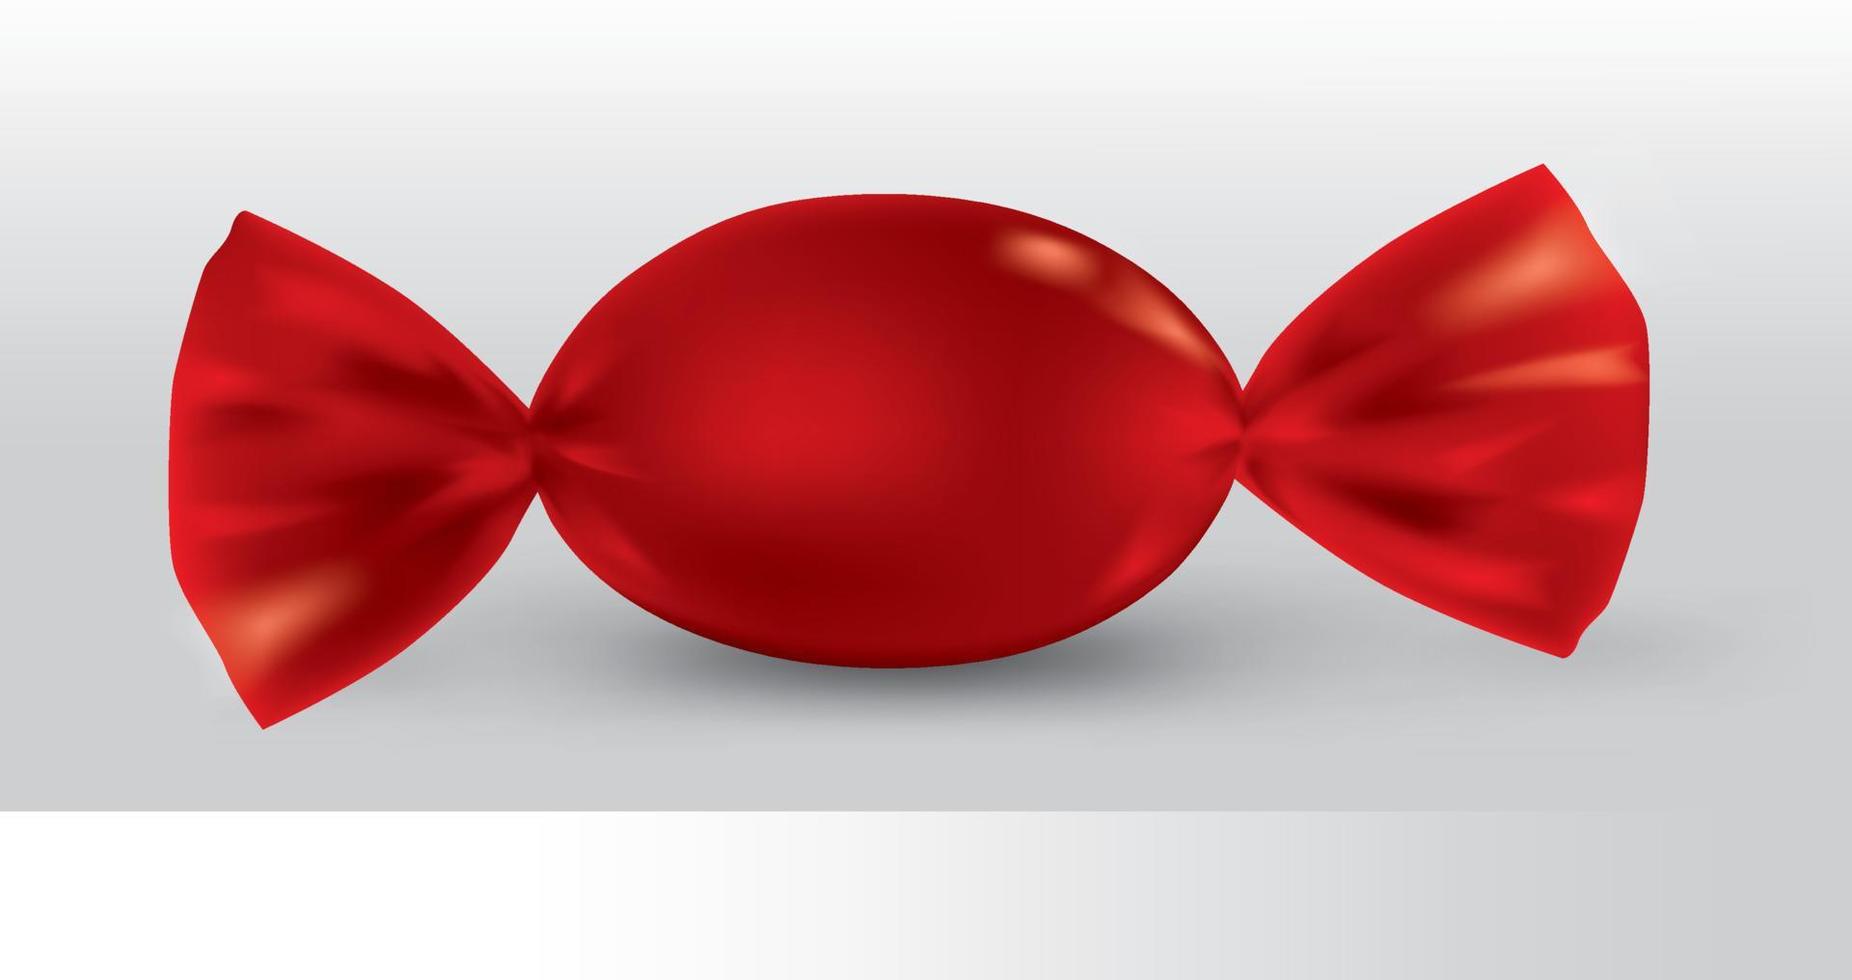 pacote de doces oval vermelho para novo design, isolamento do produto em um fundo branco com reflexos e cor vermelha de solda. vetor